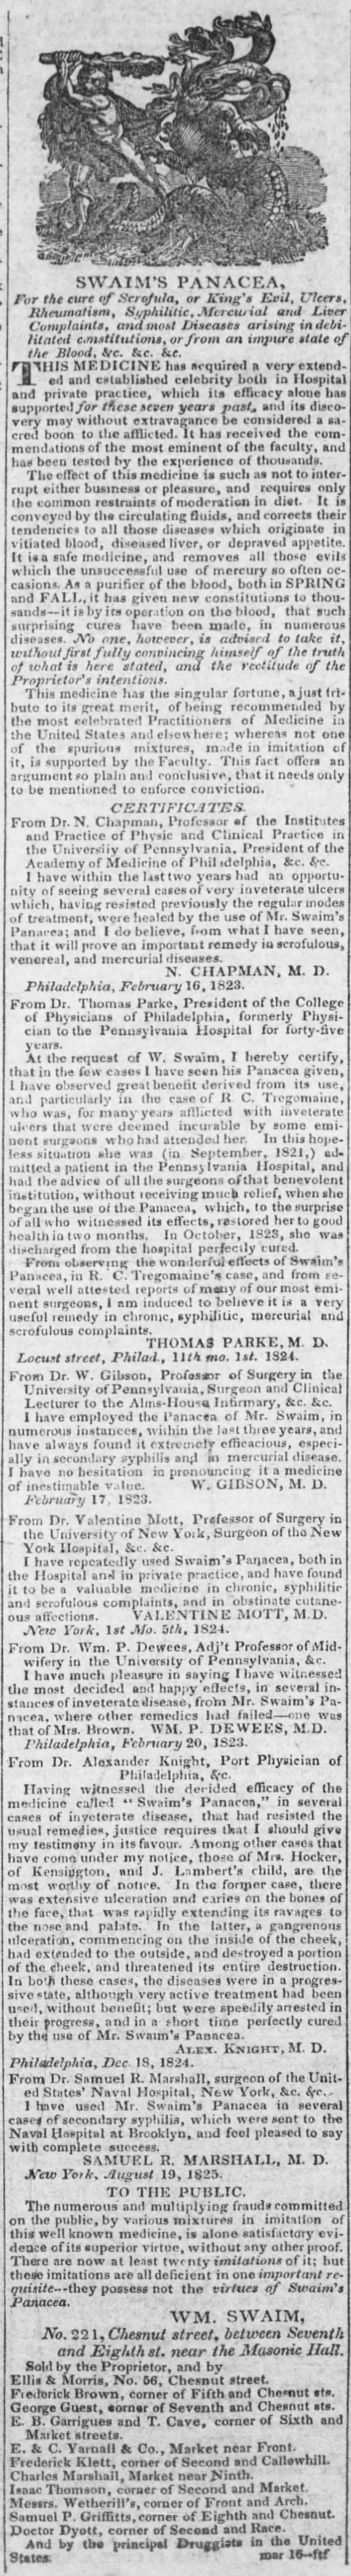 Swaim's Panacea ad (1827)